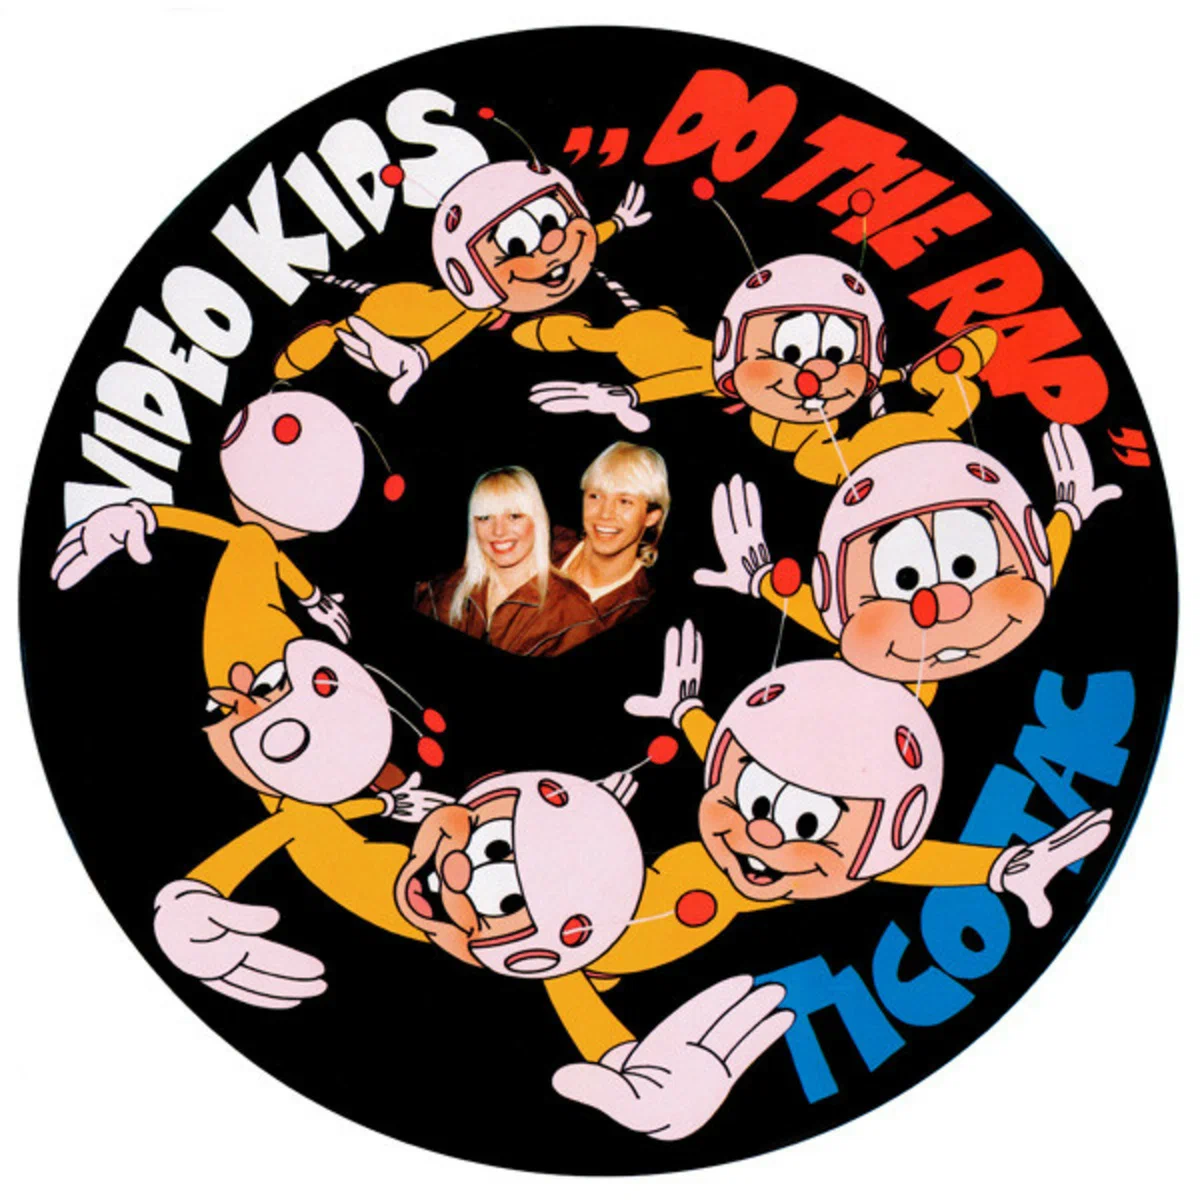 Музыка 1980-х: секрет группы "VideoKids" и запоминающийся смех забавного дятла Woody